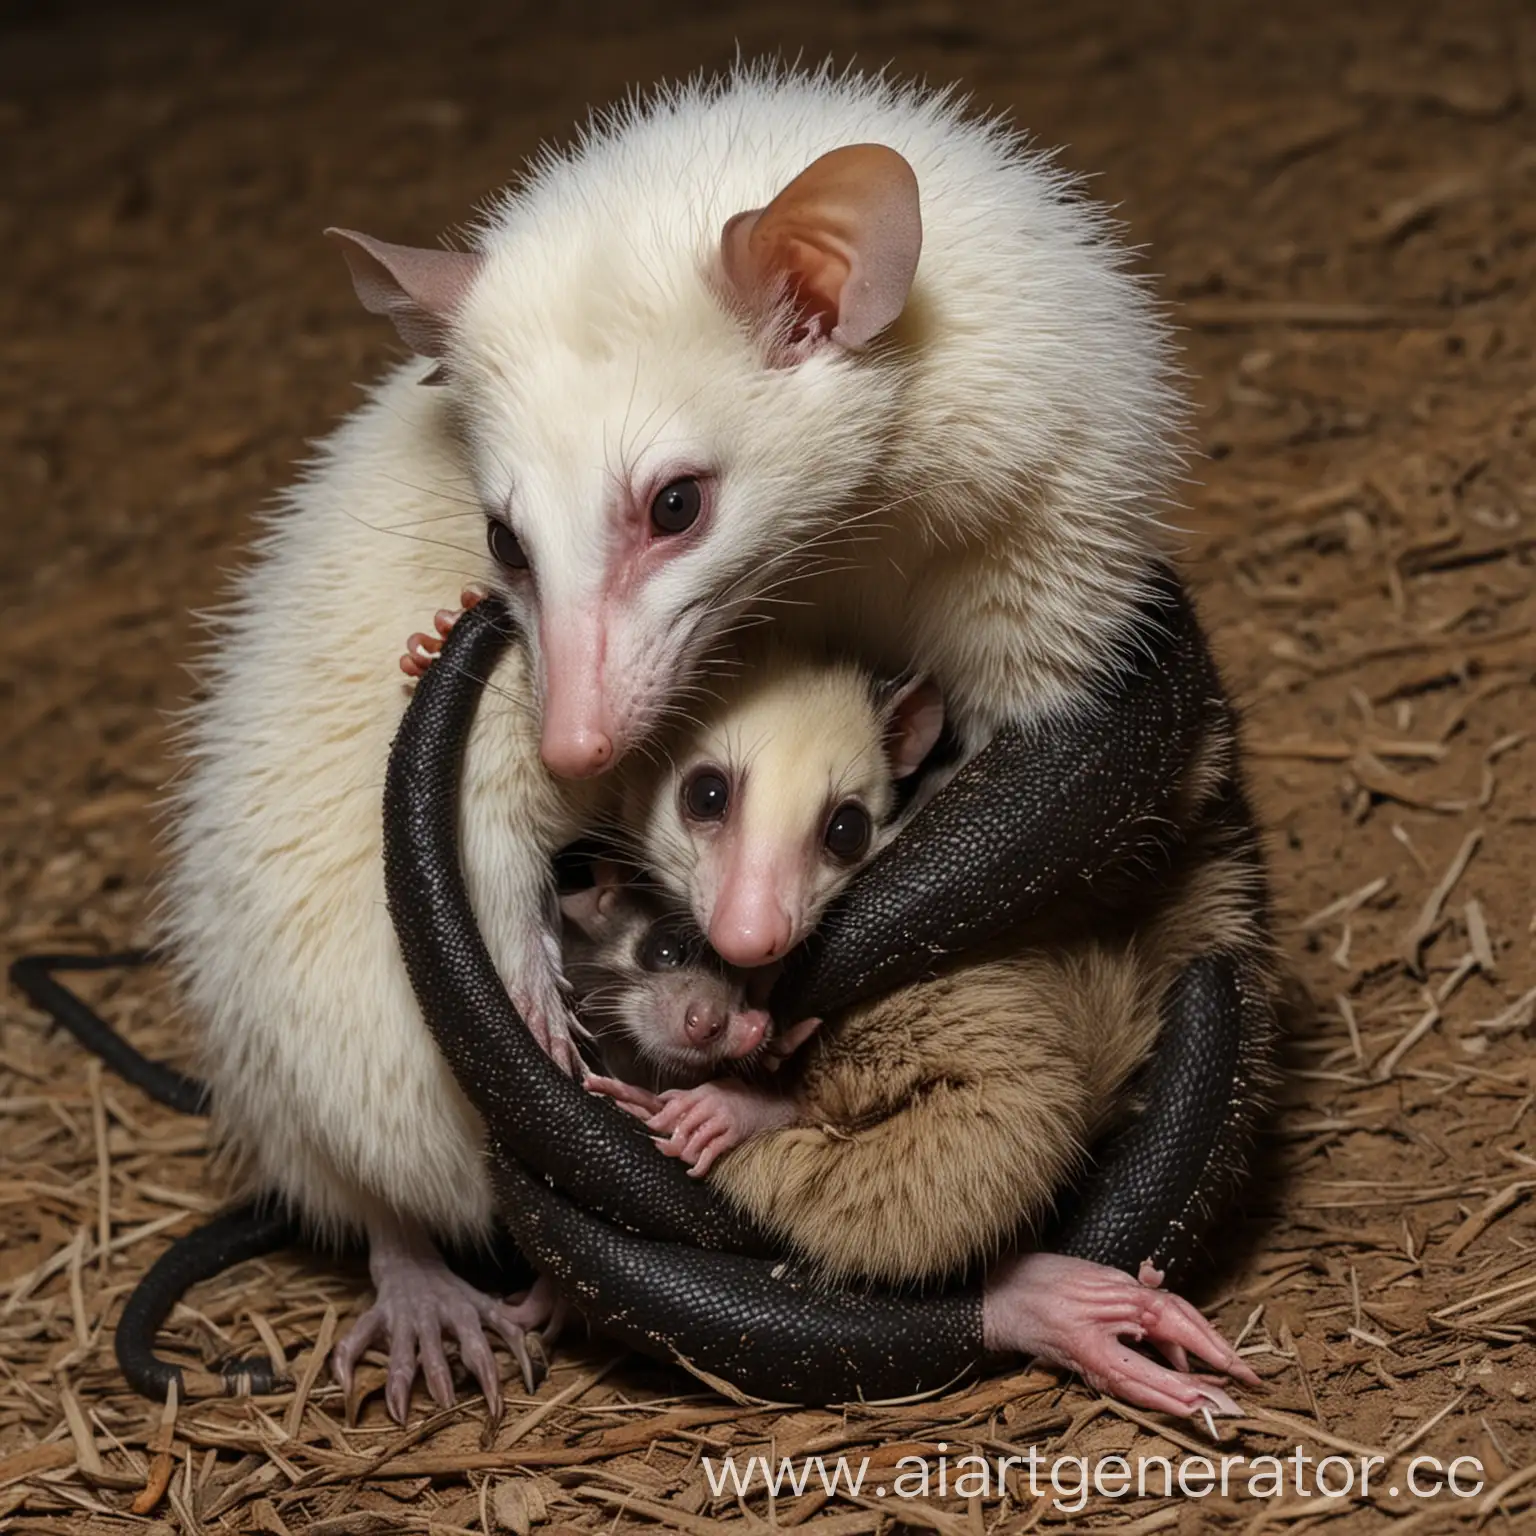 Cobra-Embraces-Opossum-in-Natural-Habitat